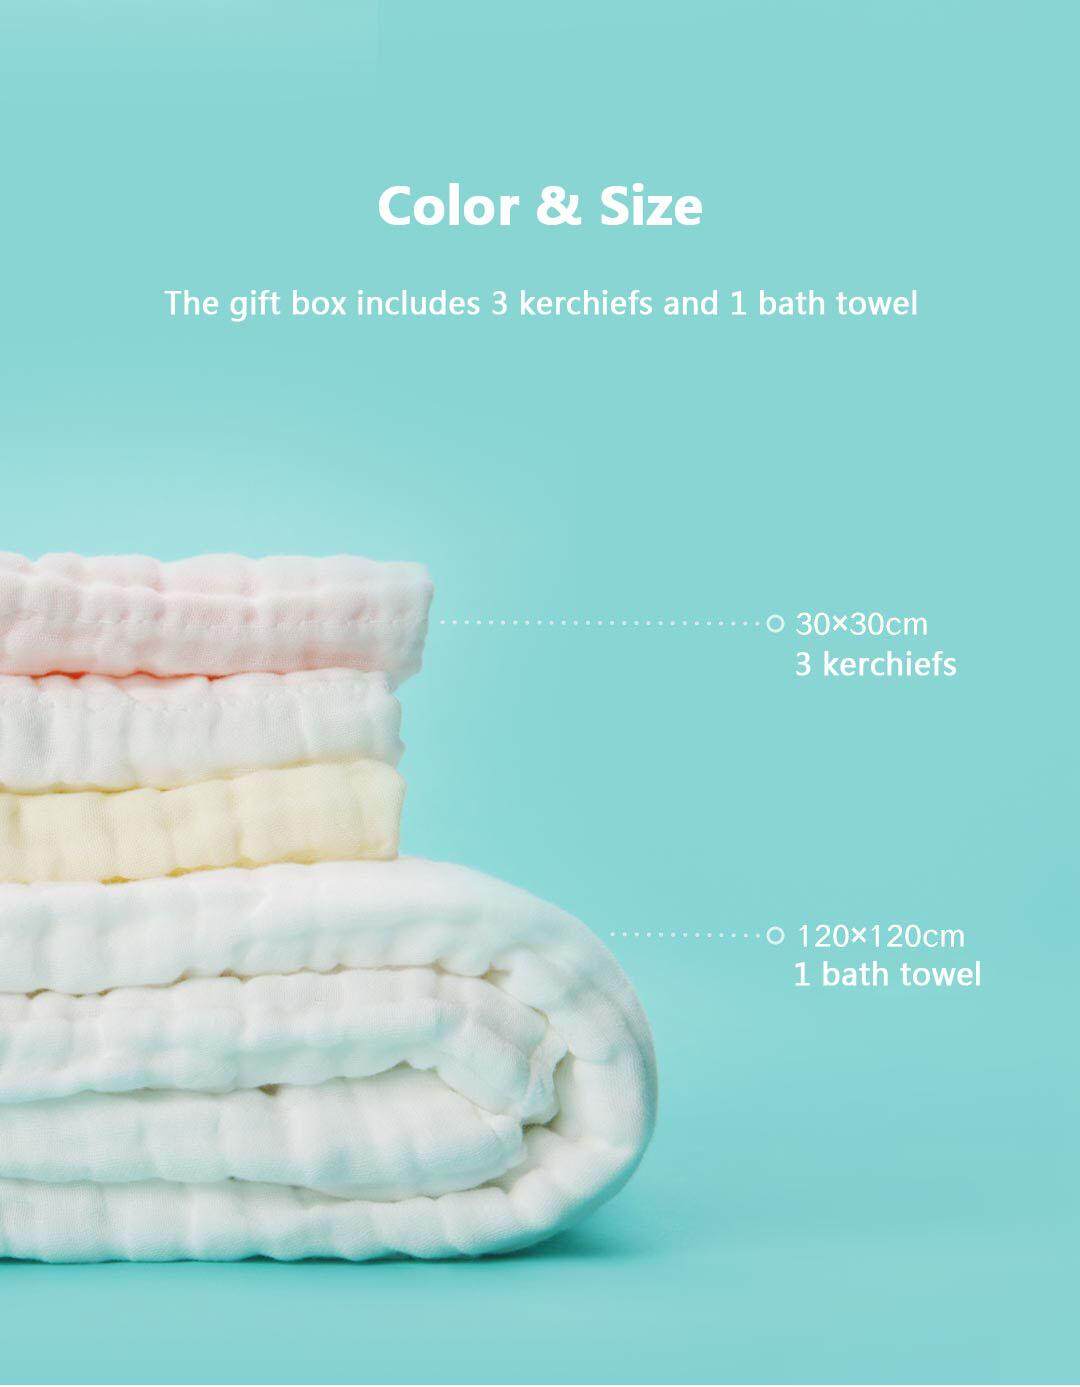 [IX] Xiaomi Mijia BEVA 4 in 1 Antibacterial Baby New Born Cotton Bath Gift Set for 0 - 12 month baby